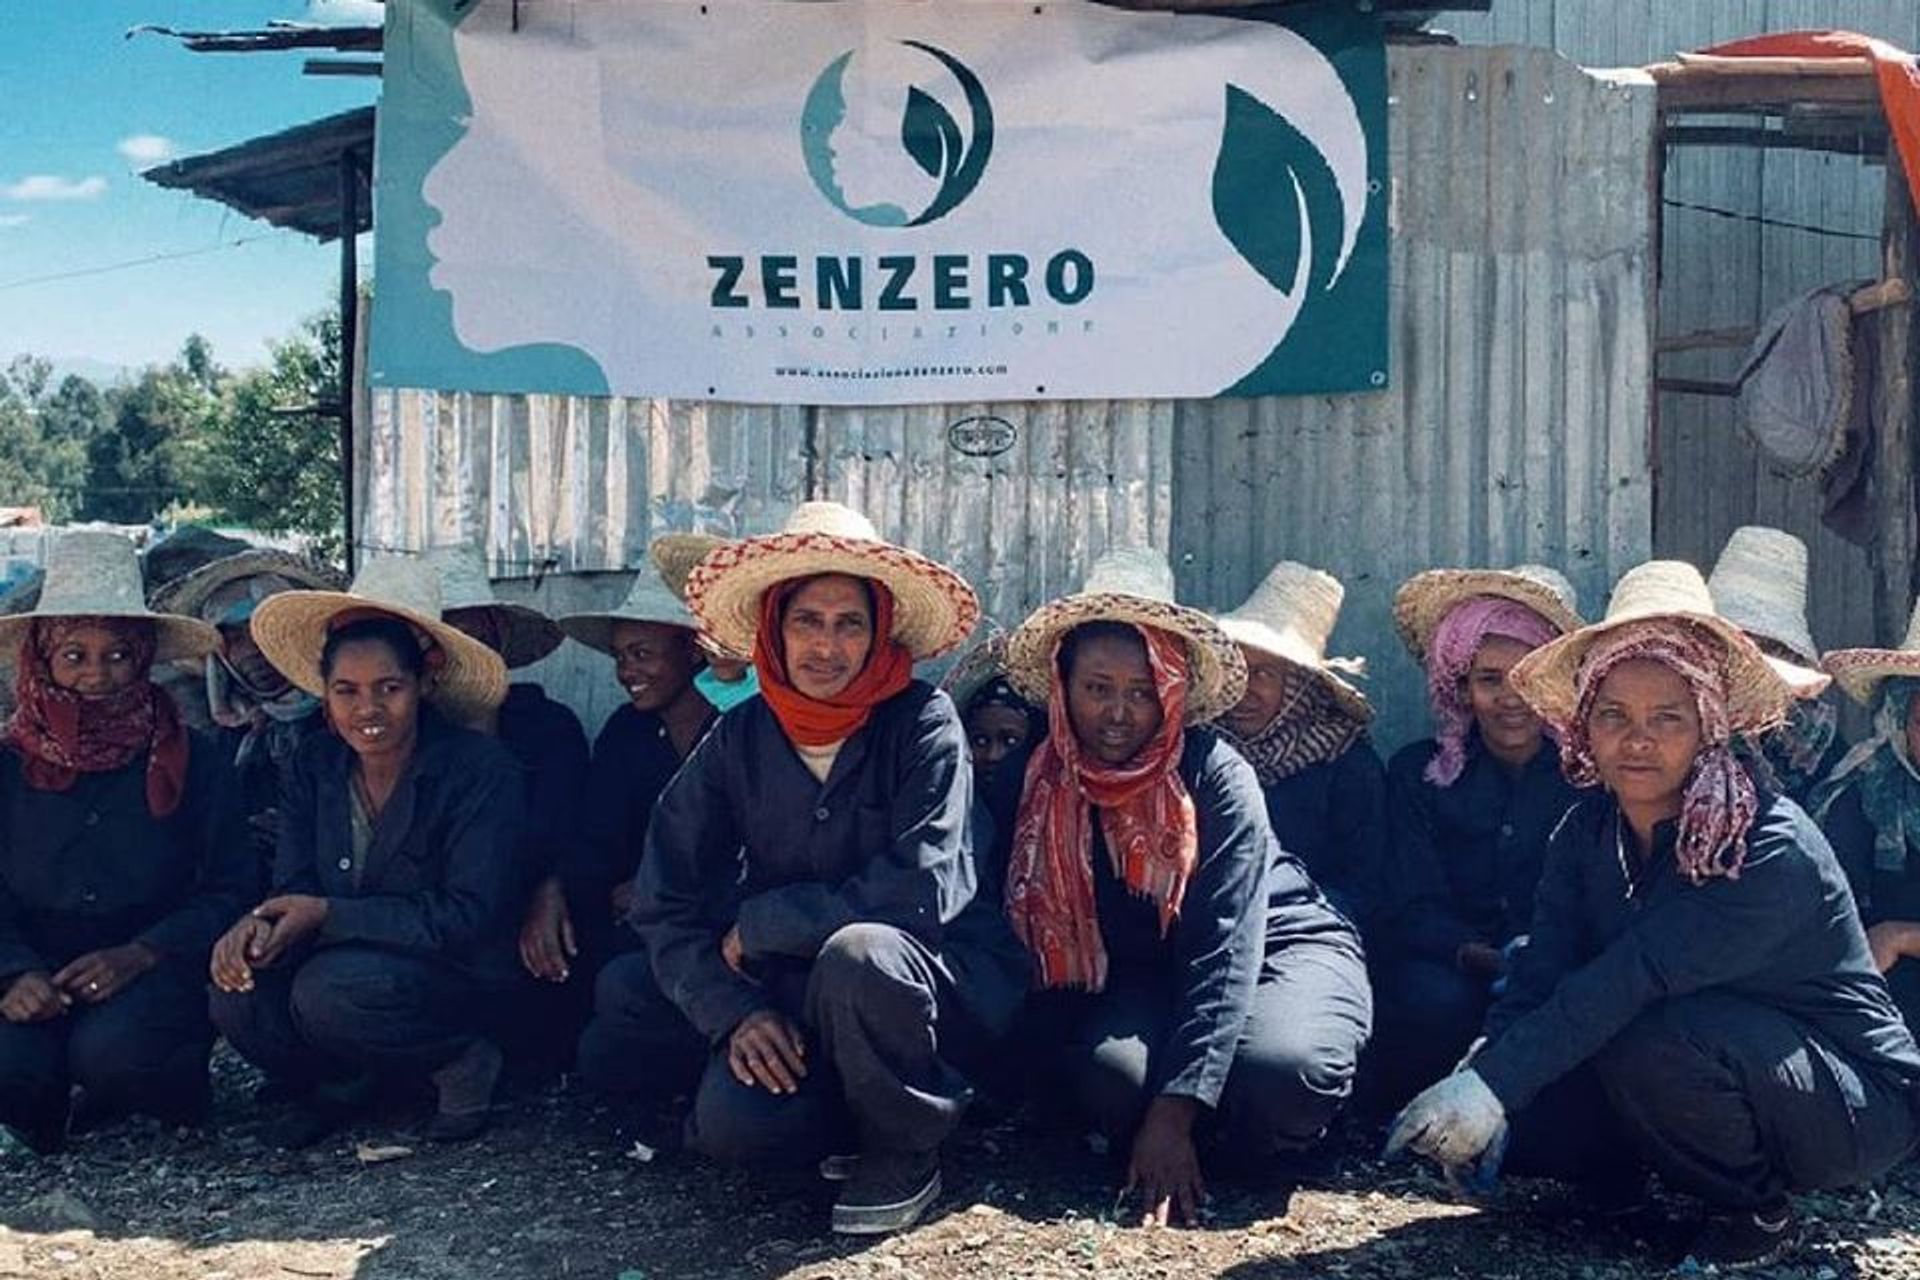 Le attività femminili di raccolta della plastica della "Associazione Zenzero" in Etiopia